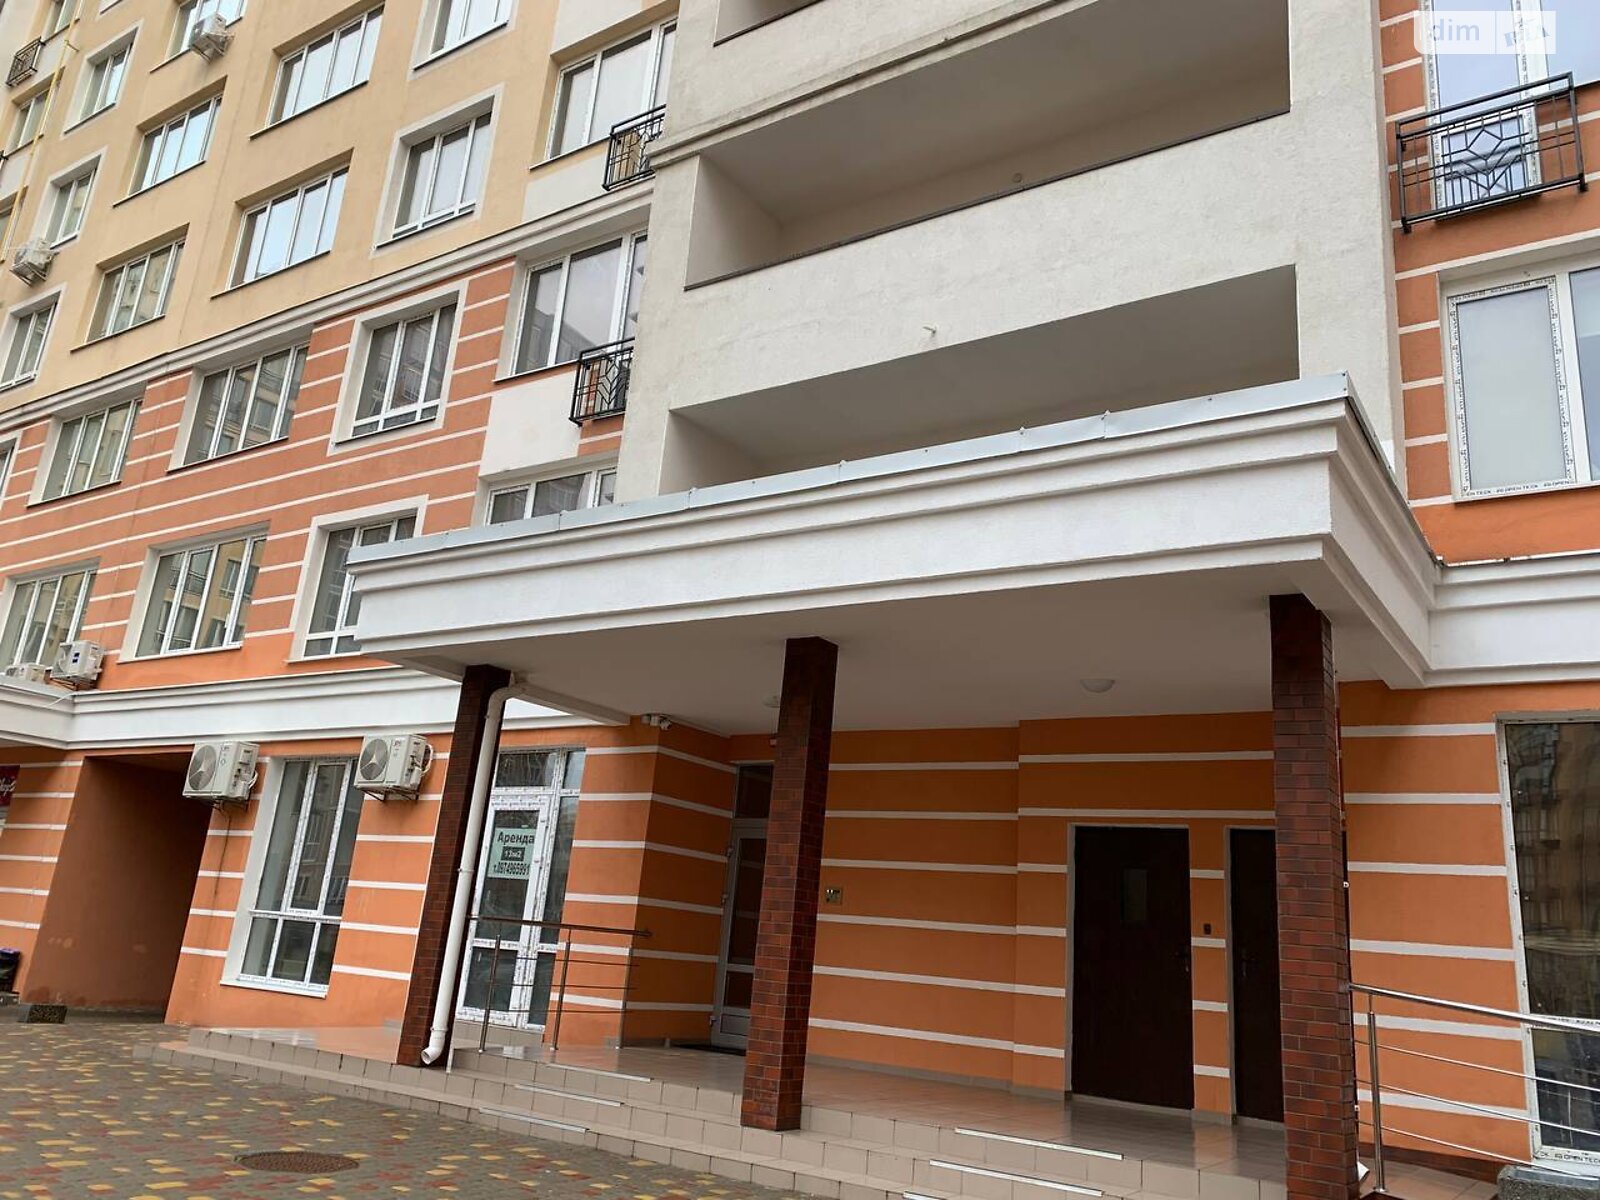 Продаж однокімнатної квартири в Новосілках, на вул. Олександрівська 1Г, фото 1